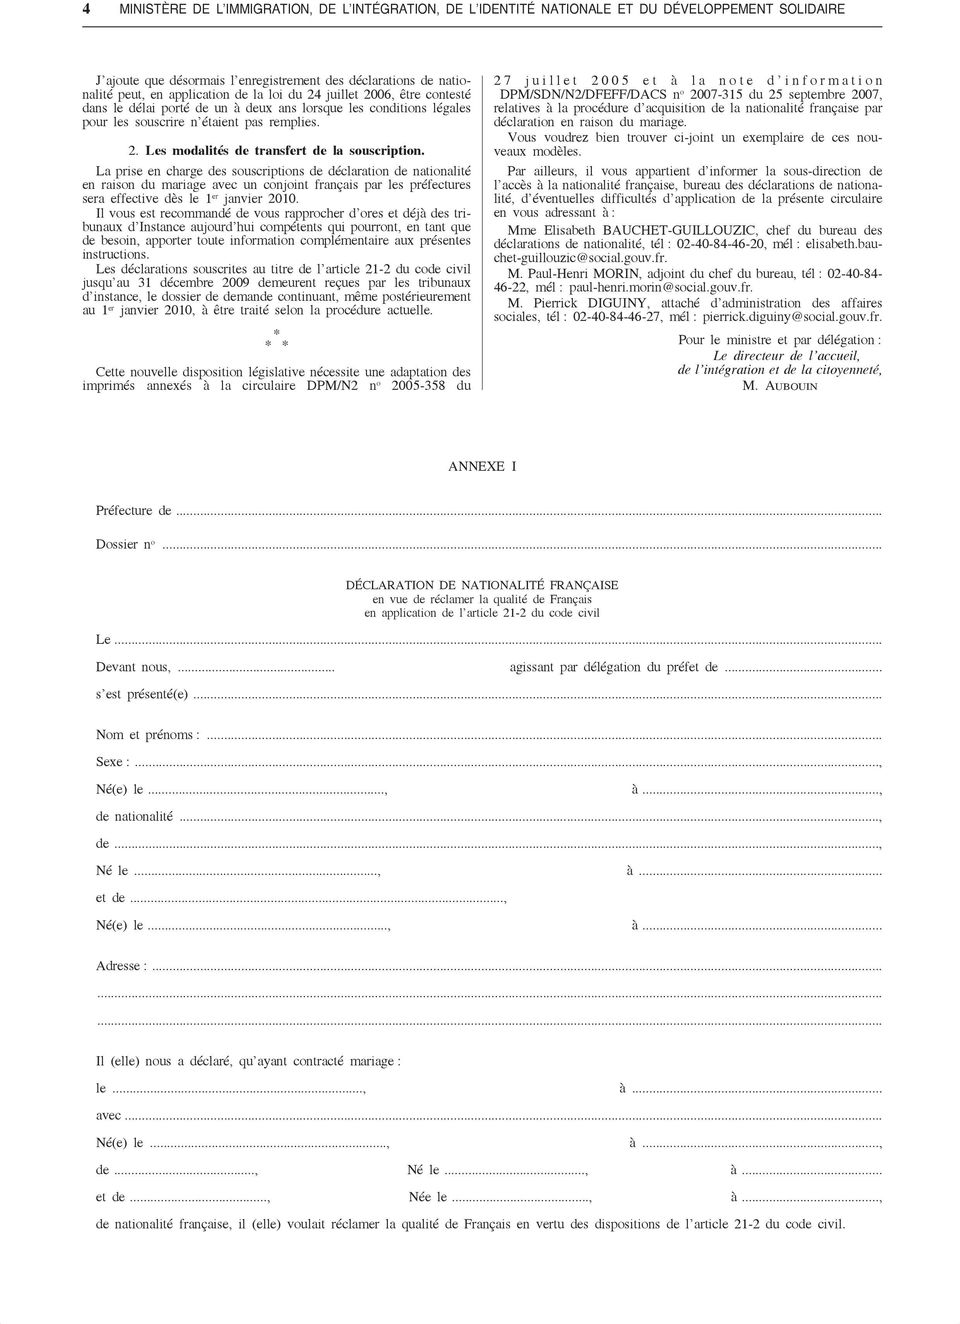 La prise en charge des souscriptions de déclaration de nationalité en raison du mariage avec un conjoint français par les préfectures sera effective dès le 1 er janvier 2010.